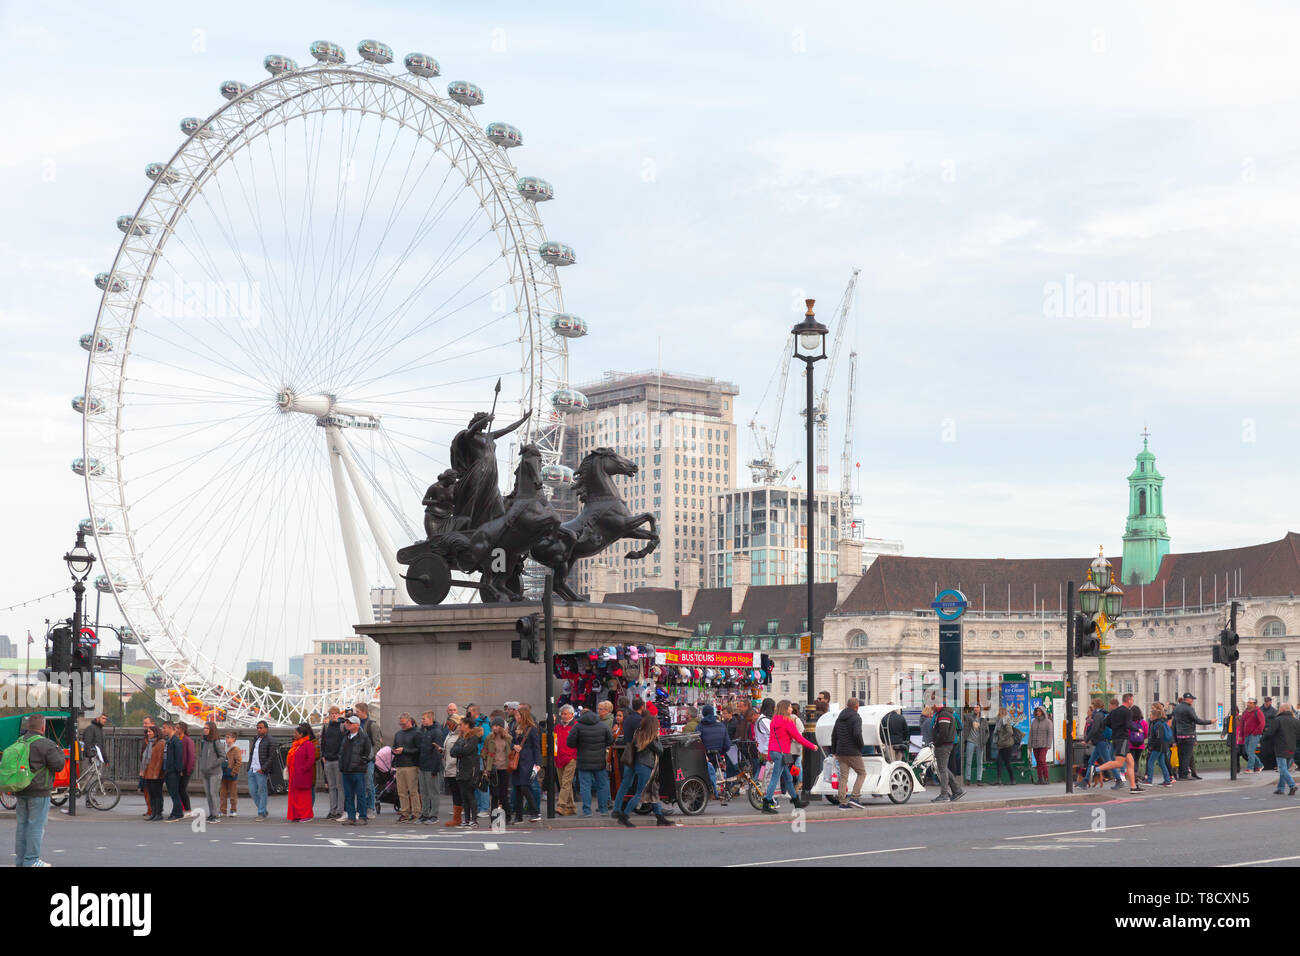 Londres, Royaume-Uni - 31 octobre 2017 : avec Boadicea et ses filles groupe de sculptures en bronze et de London Eye (grande roue. Ordina Banque D'Images